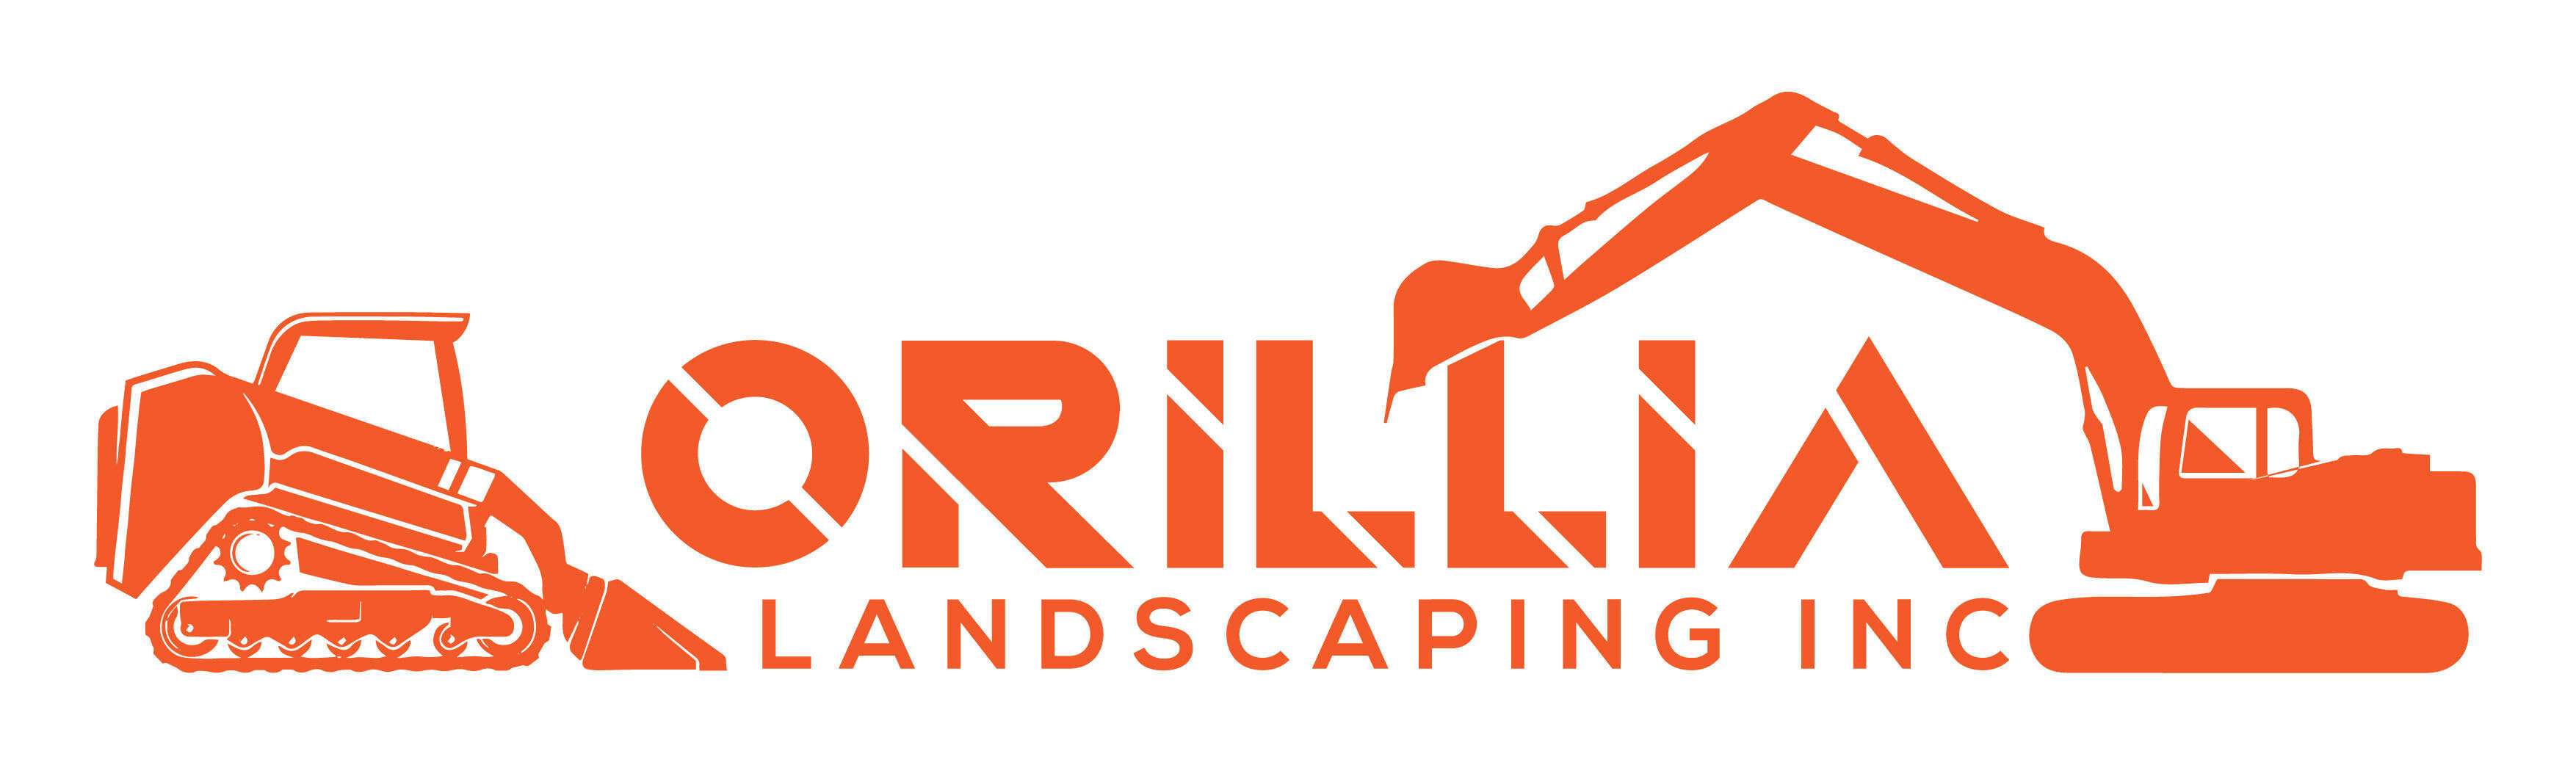 Orillia Landscaping Inc.